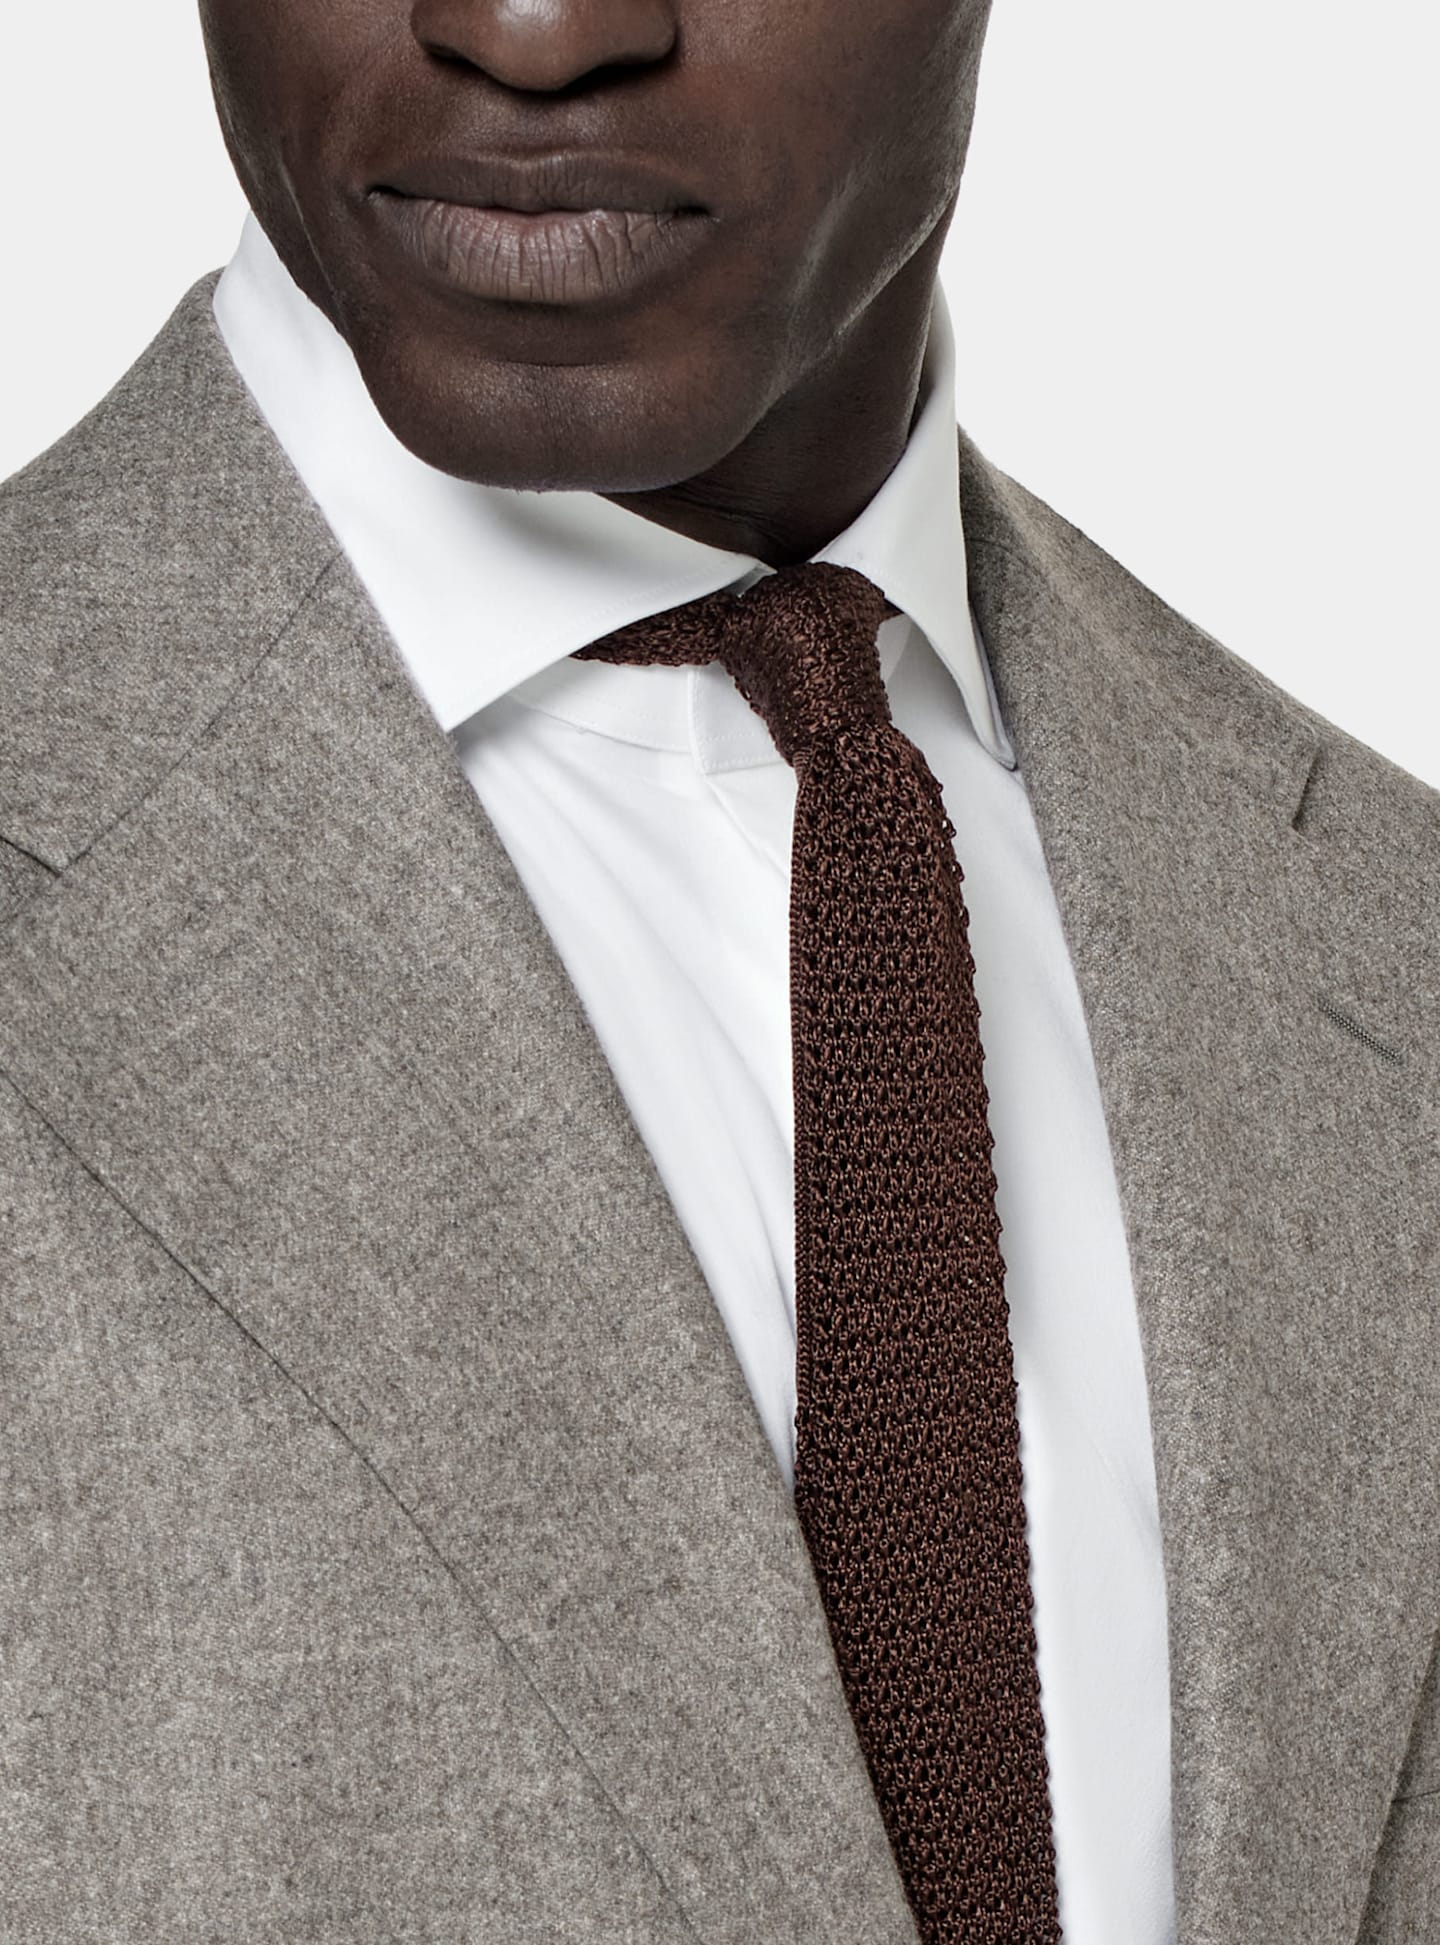 Dettaglio di abito monopetto grigio con cravatta marrone in seta lavorata a maglia.